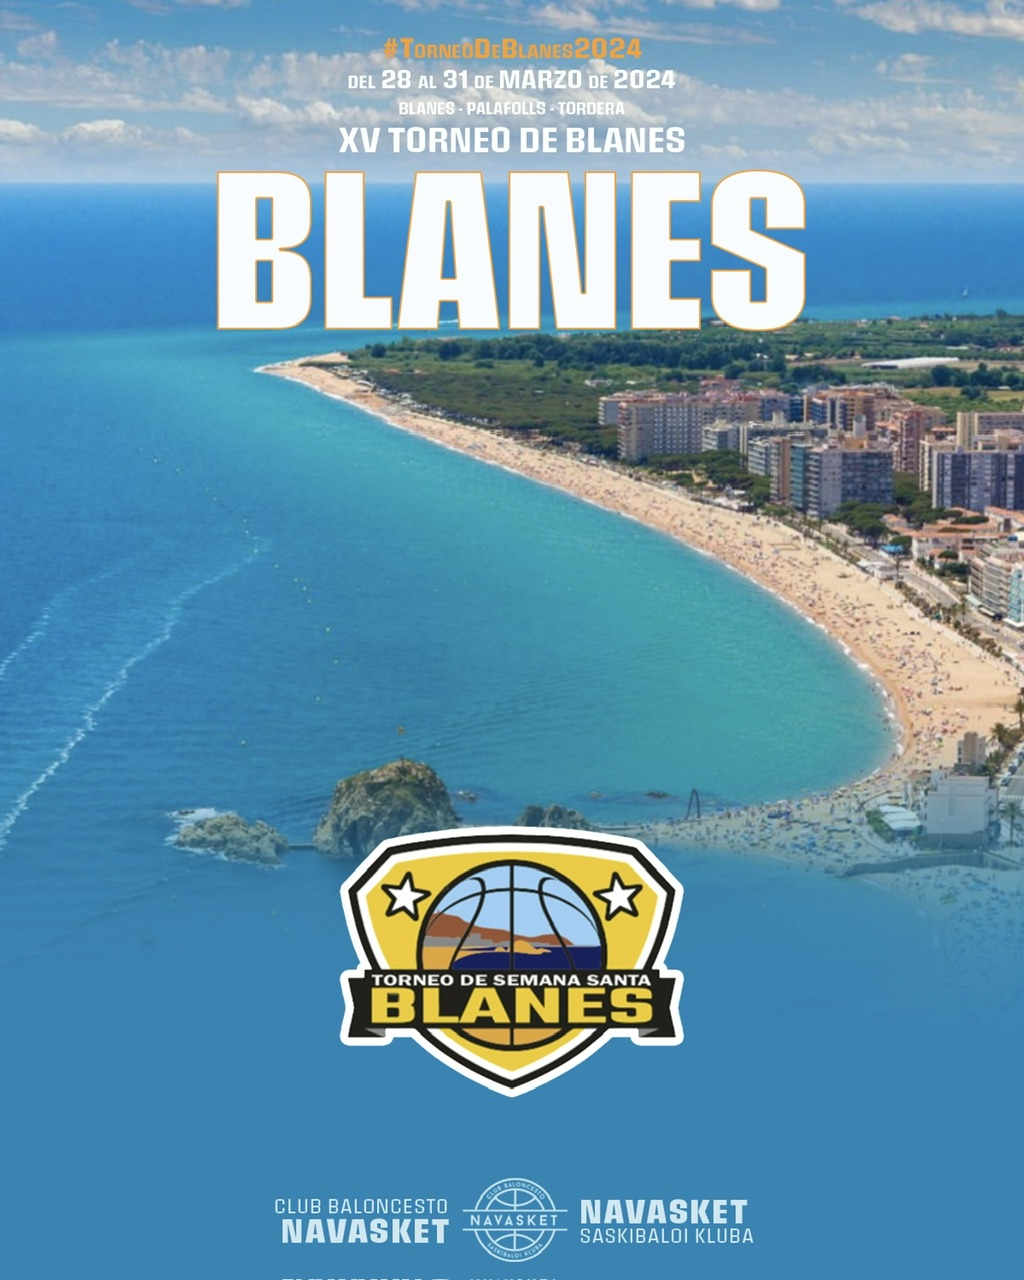 TORNEO DE BLANES 2024 | Más de 100 participantes de Navasket viajan a Blanes